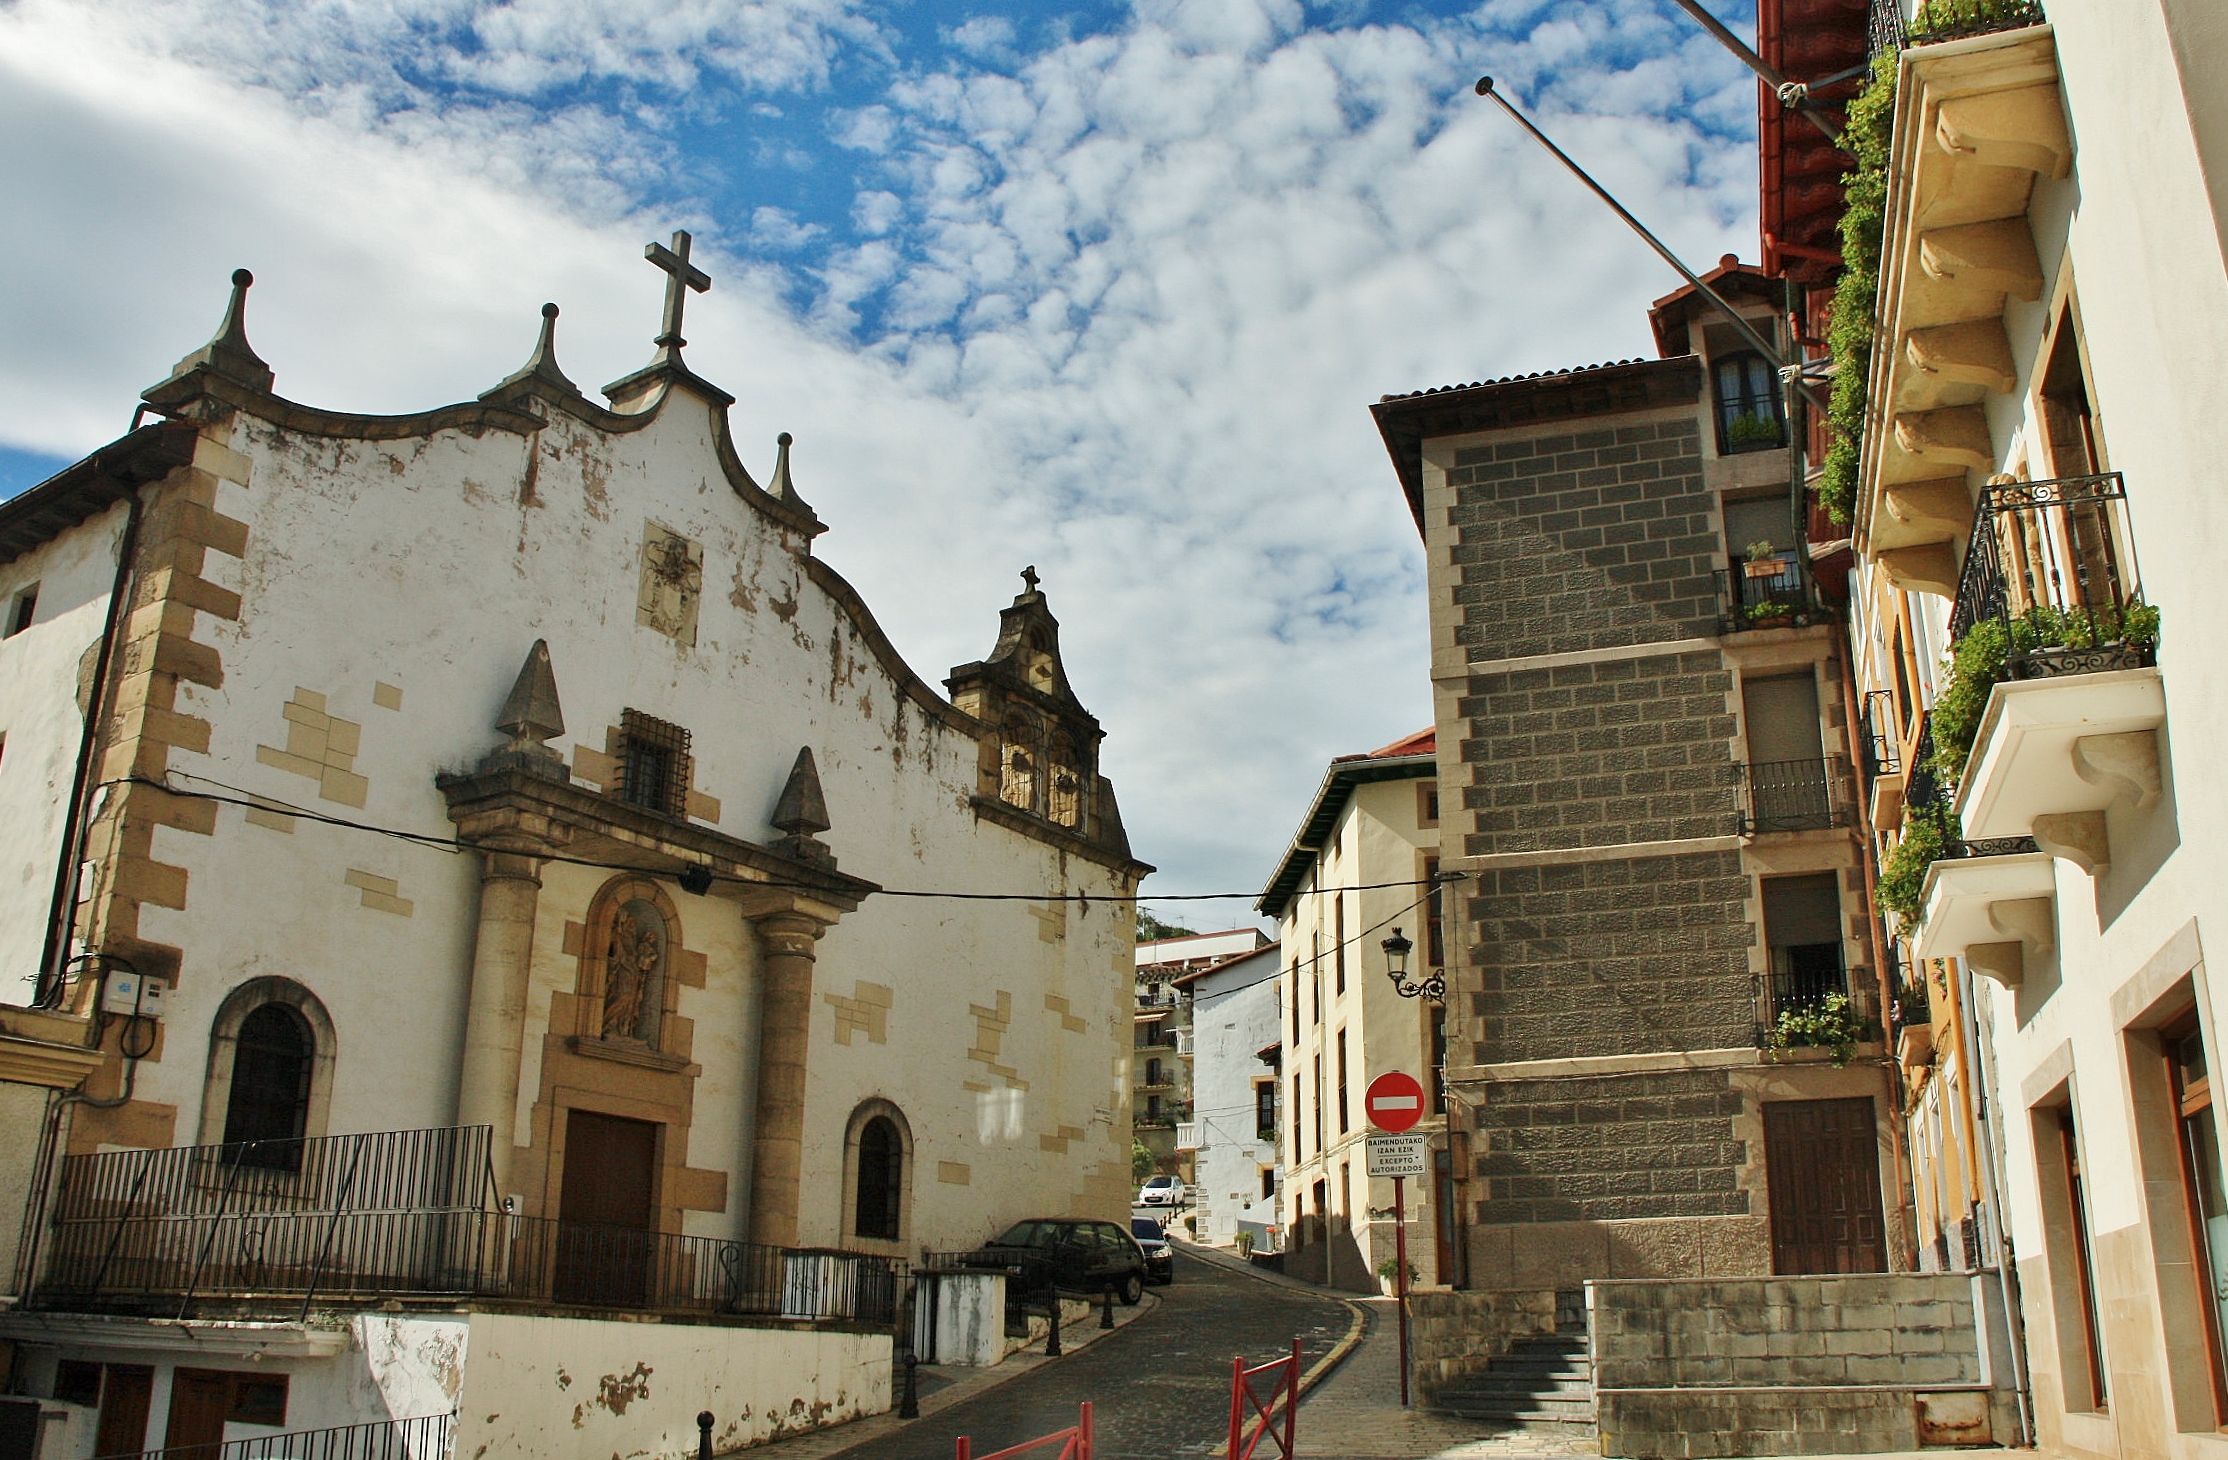 Foto: Centro histórico - Zumaia (Gipuzkoa), España